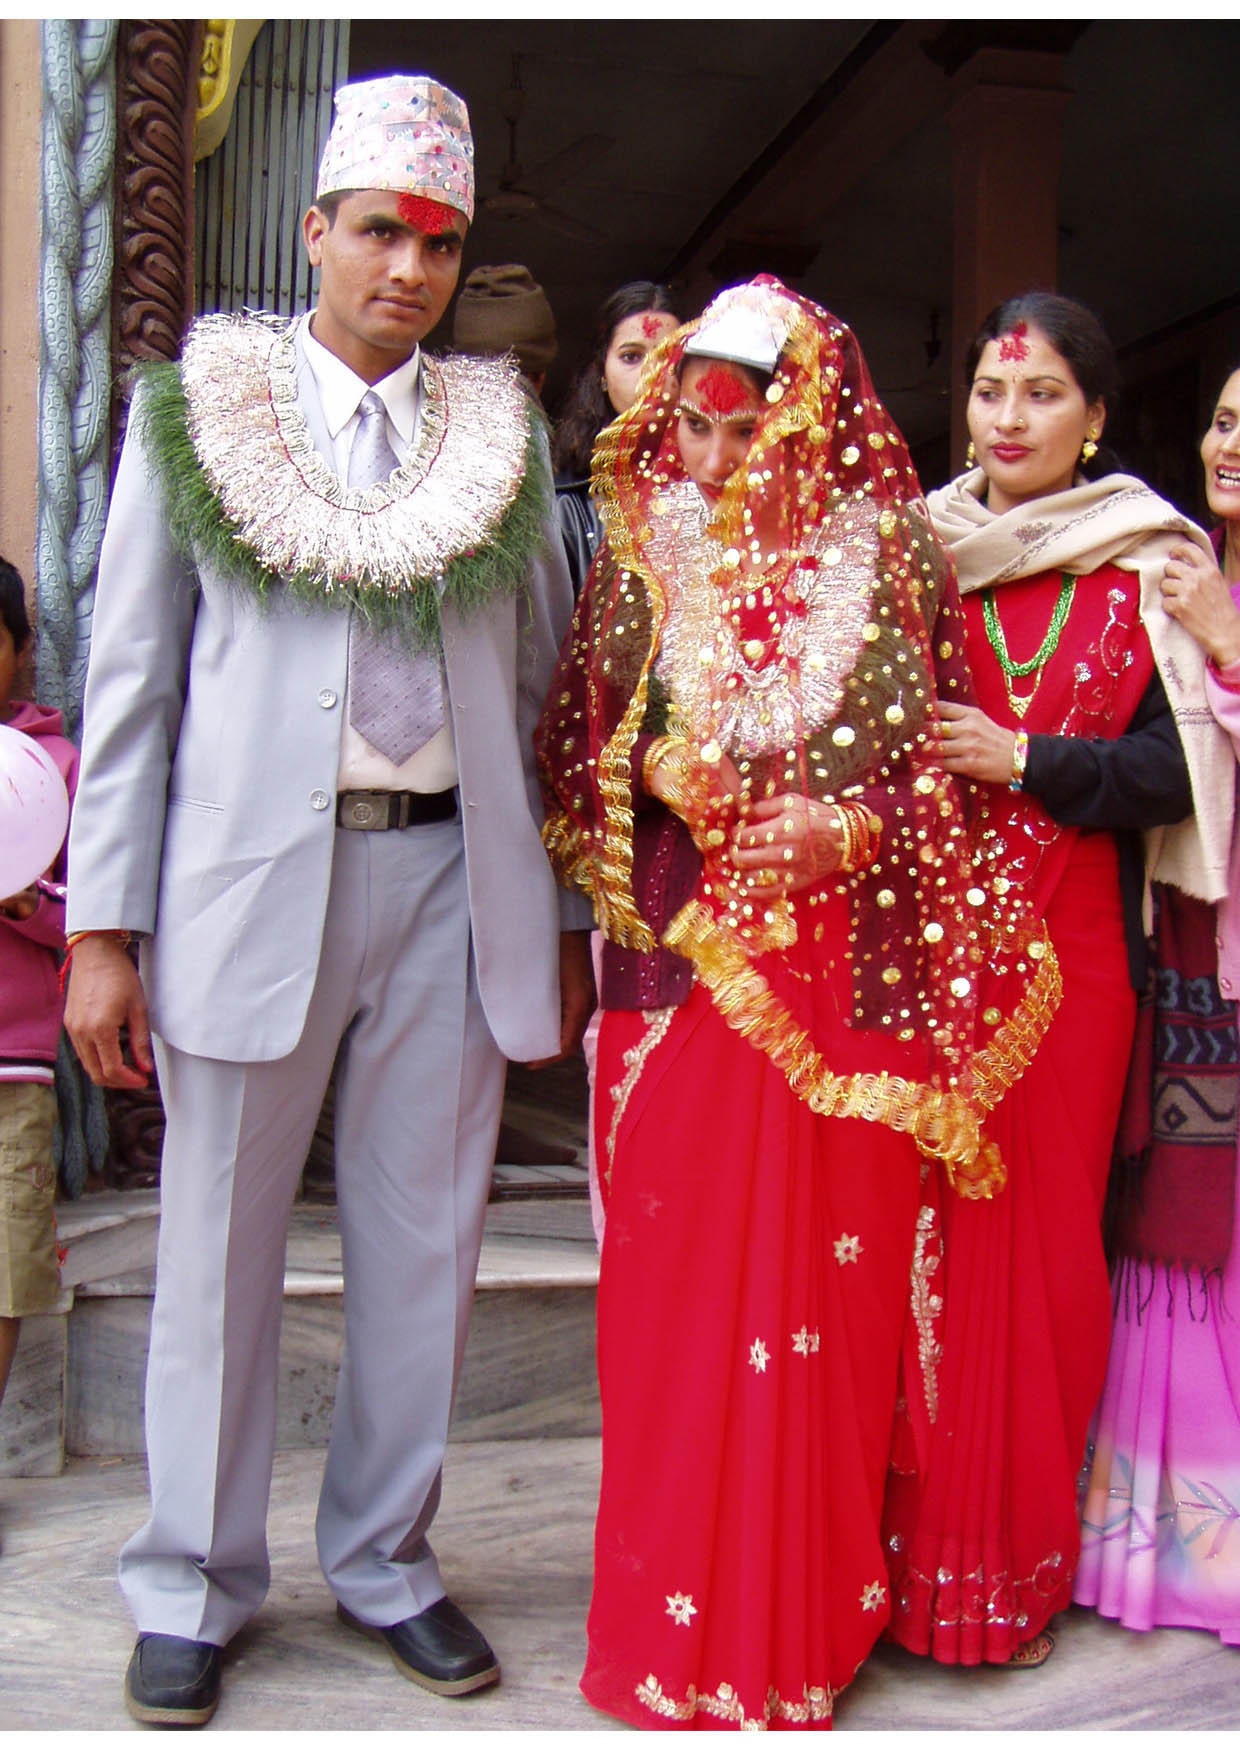 Photo mariage hindou au Nepal - Photos Gratuites à Imprimer - Photo 8964